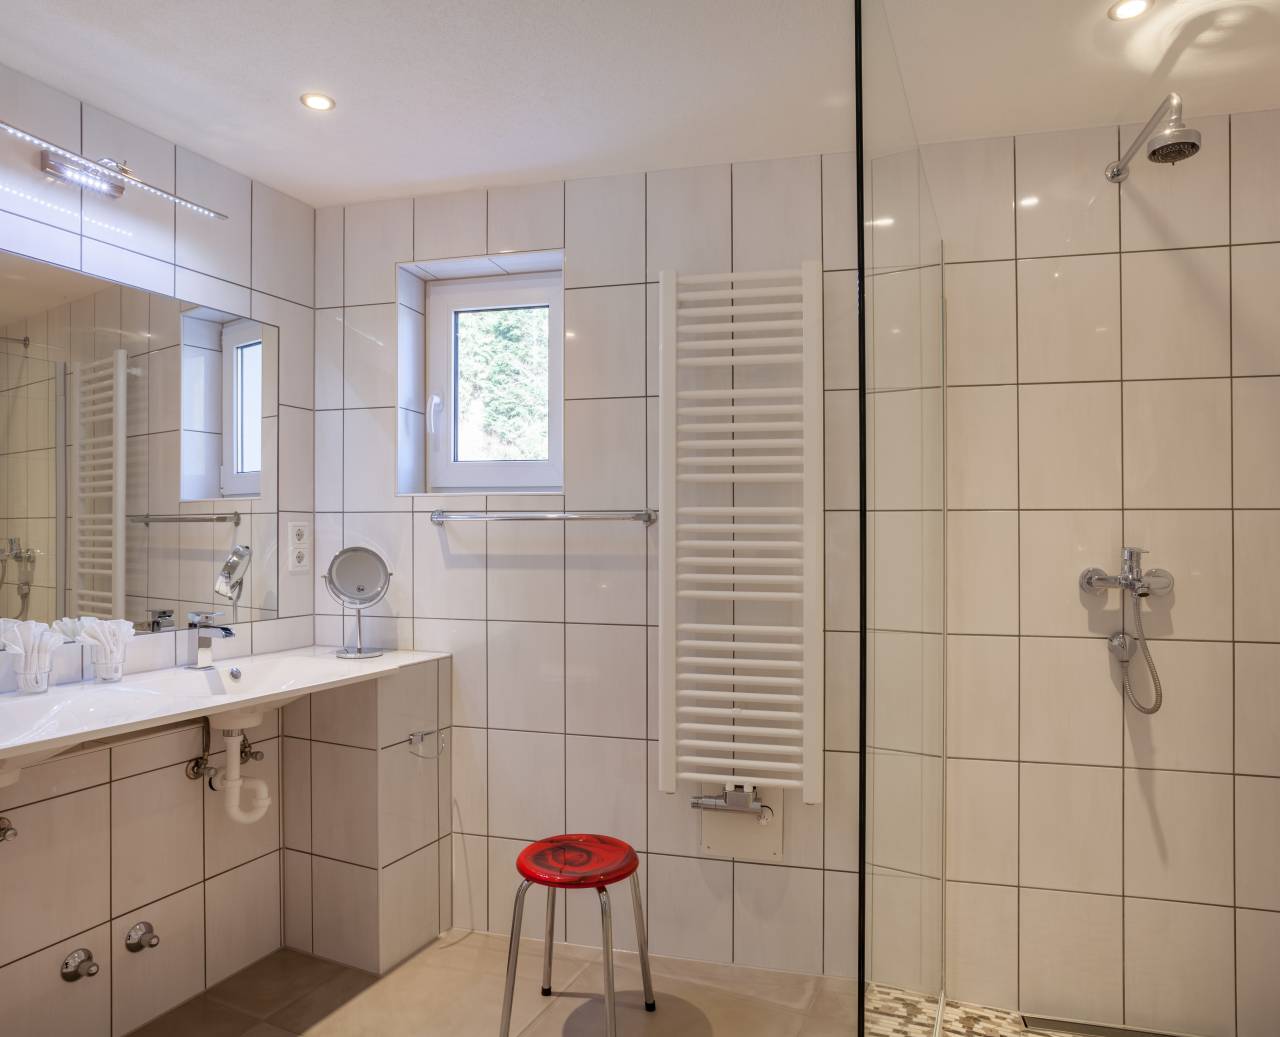 Weiß gefliestes Badezimmer mit Dusche, Waschbecken, Wandspiegel und Handtuchtrockner